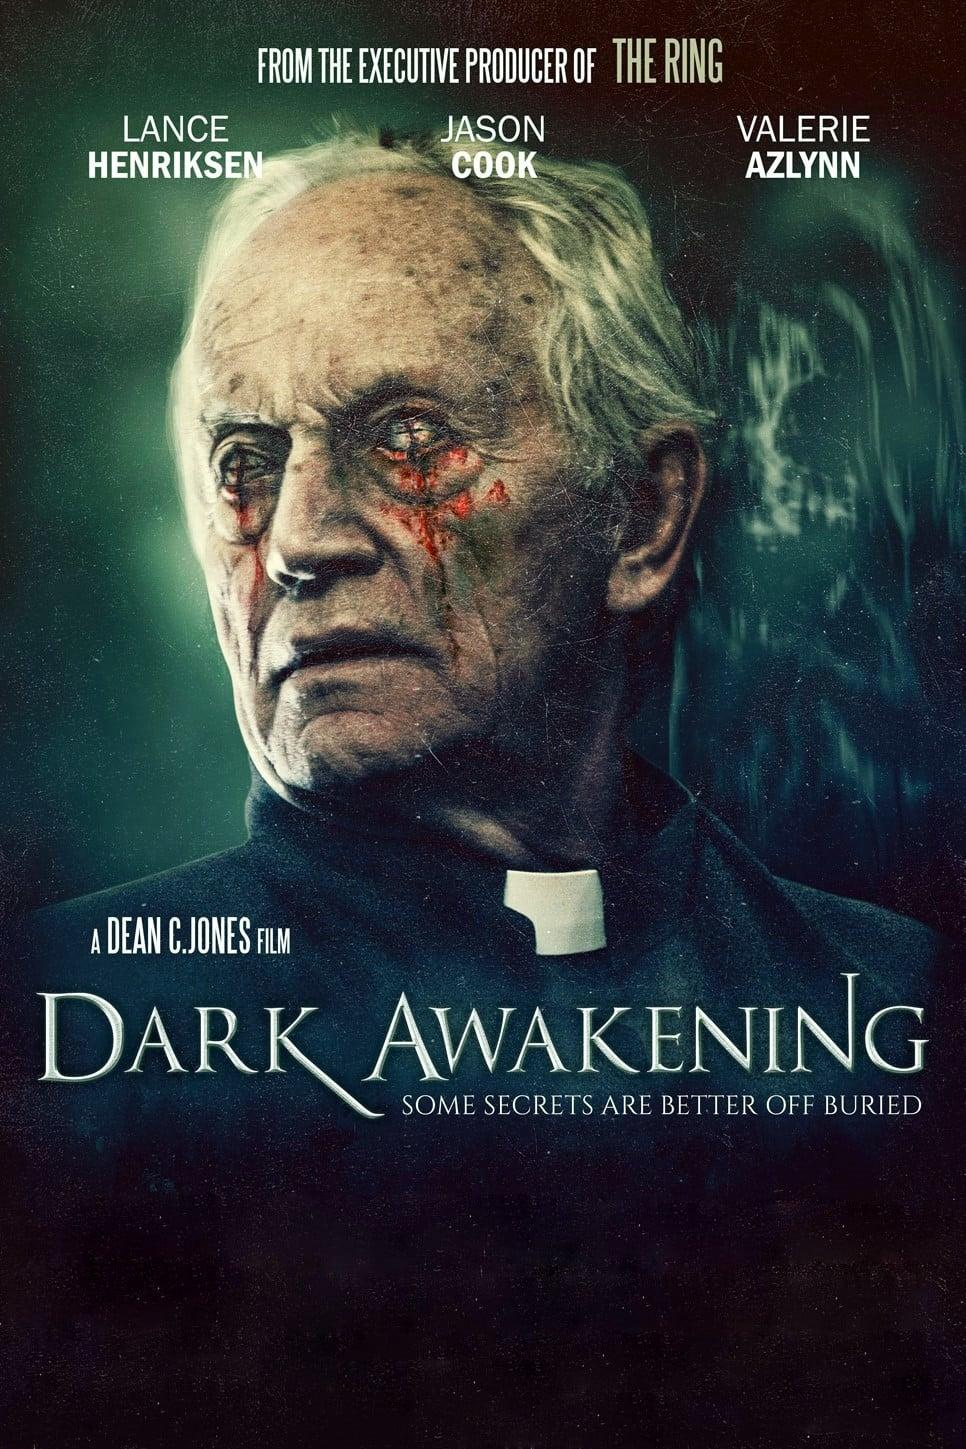 Dark Awakening poster